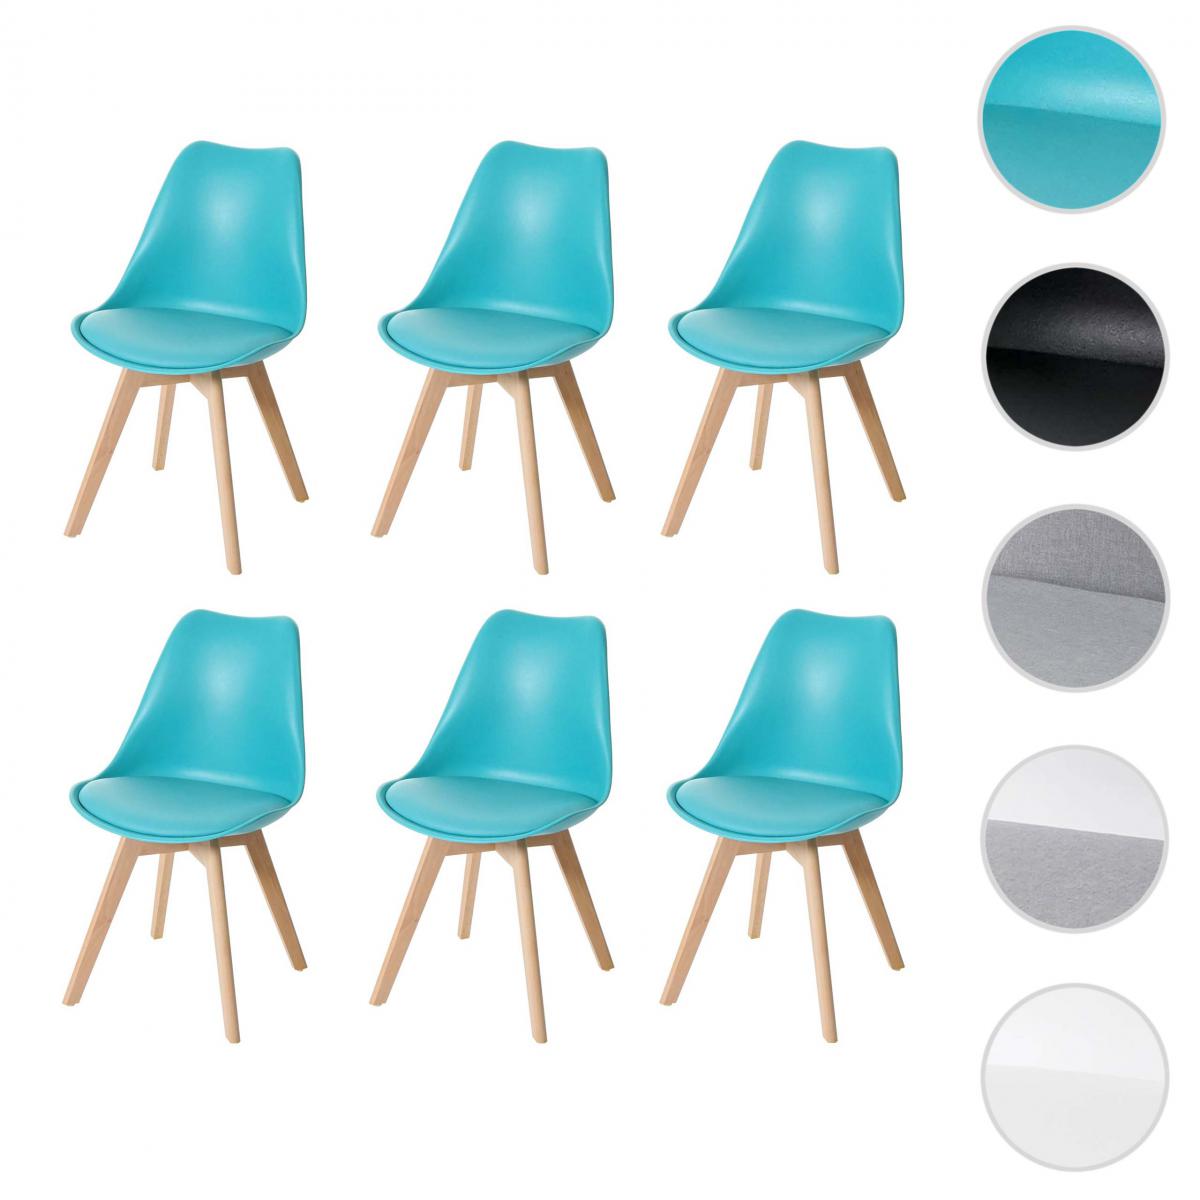 Mendler - 6x chaise de salle à manger HWC-E53, cuisine, design rétro ~ turquoise/turquoise, similicuir, pieds clairs - Chaises